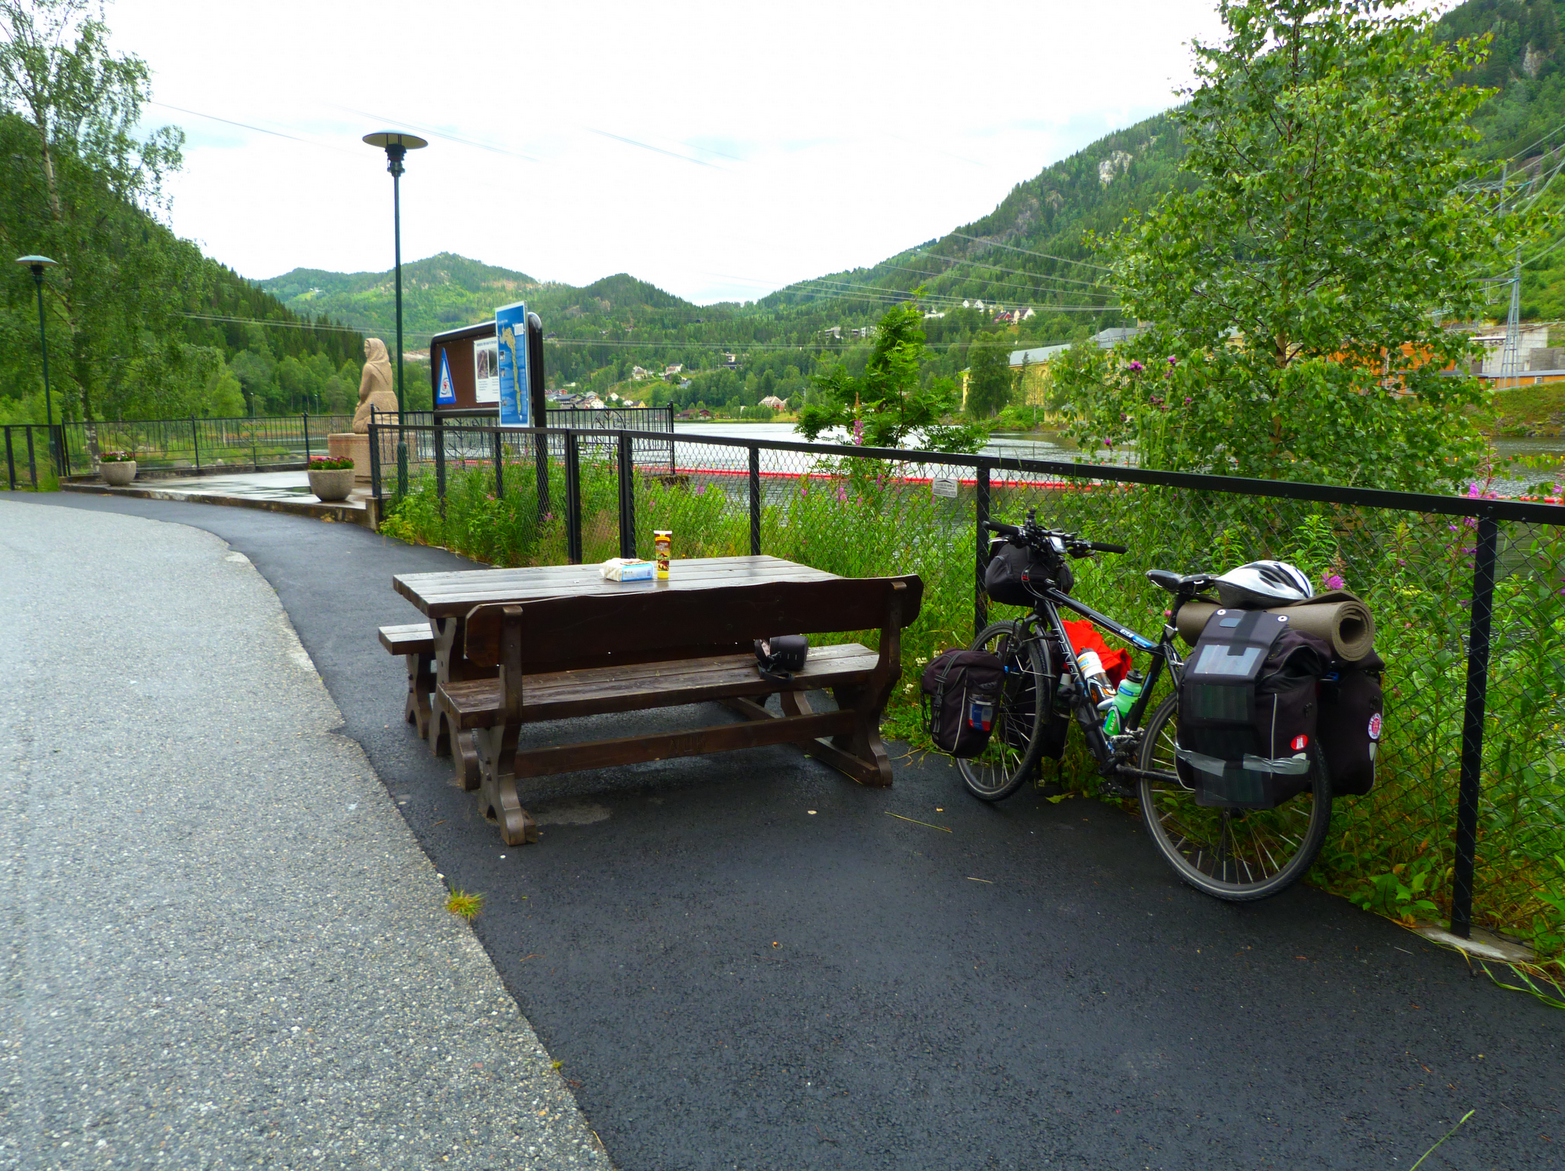 Fahrrad in Norwegen, an Gerüst lehnend. Zu sehen eine Bank, Berge und viel grün